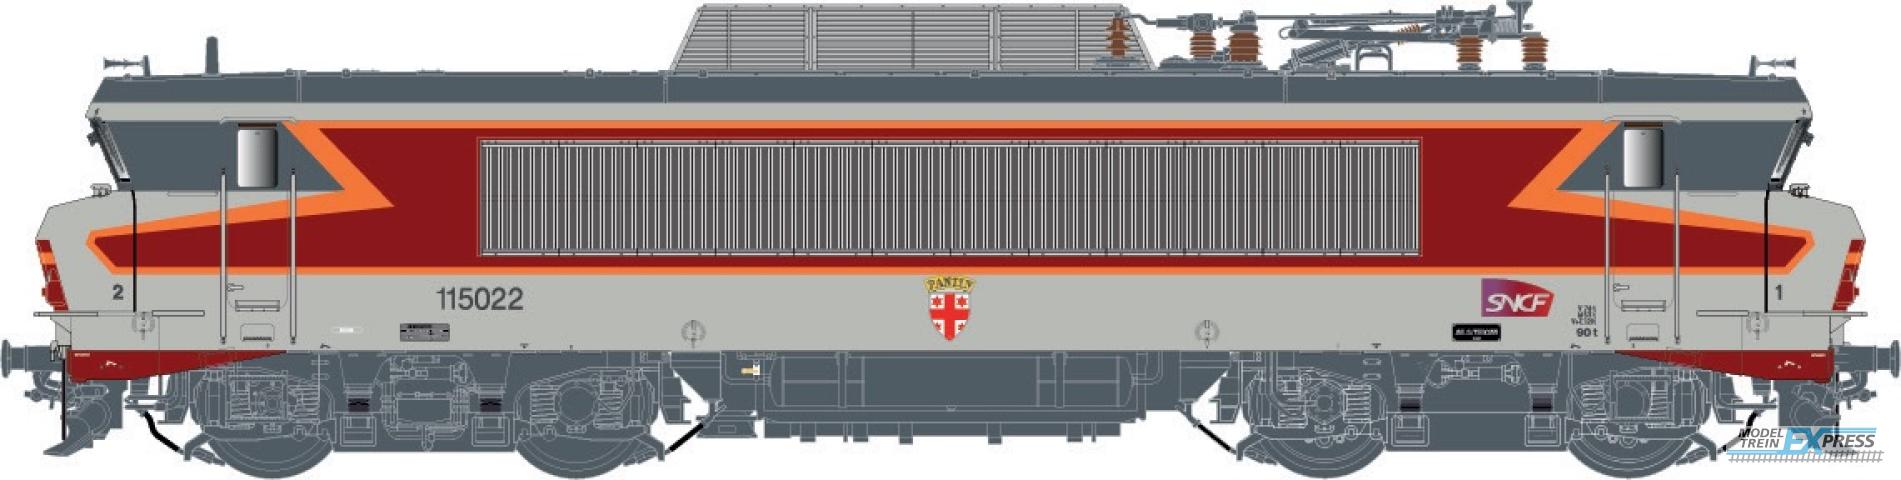 LS Models 10489 BB 15022, livrée "Arzens", gris béton,, 160 km/h, sigle Carmillon, blason Pantin, dépôt d'Archères  /  Ep. VI  /  SNCF  /  HO  /  DC  /  1 P.